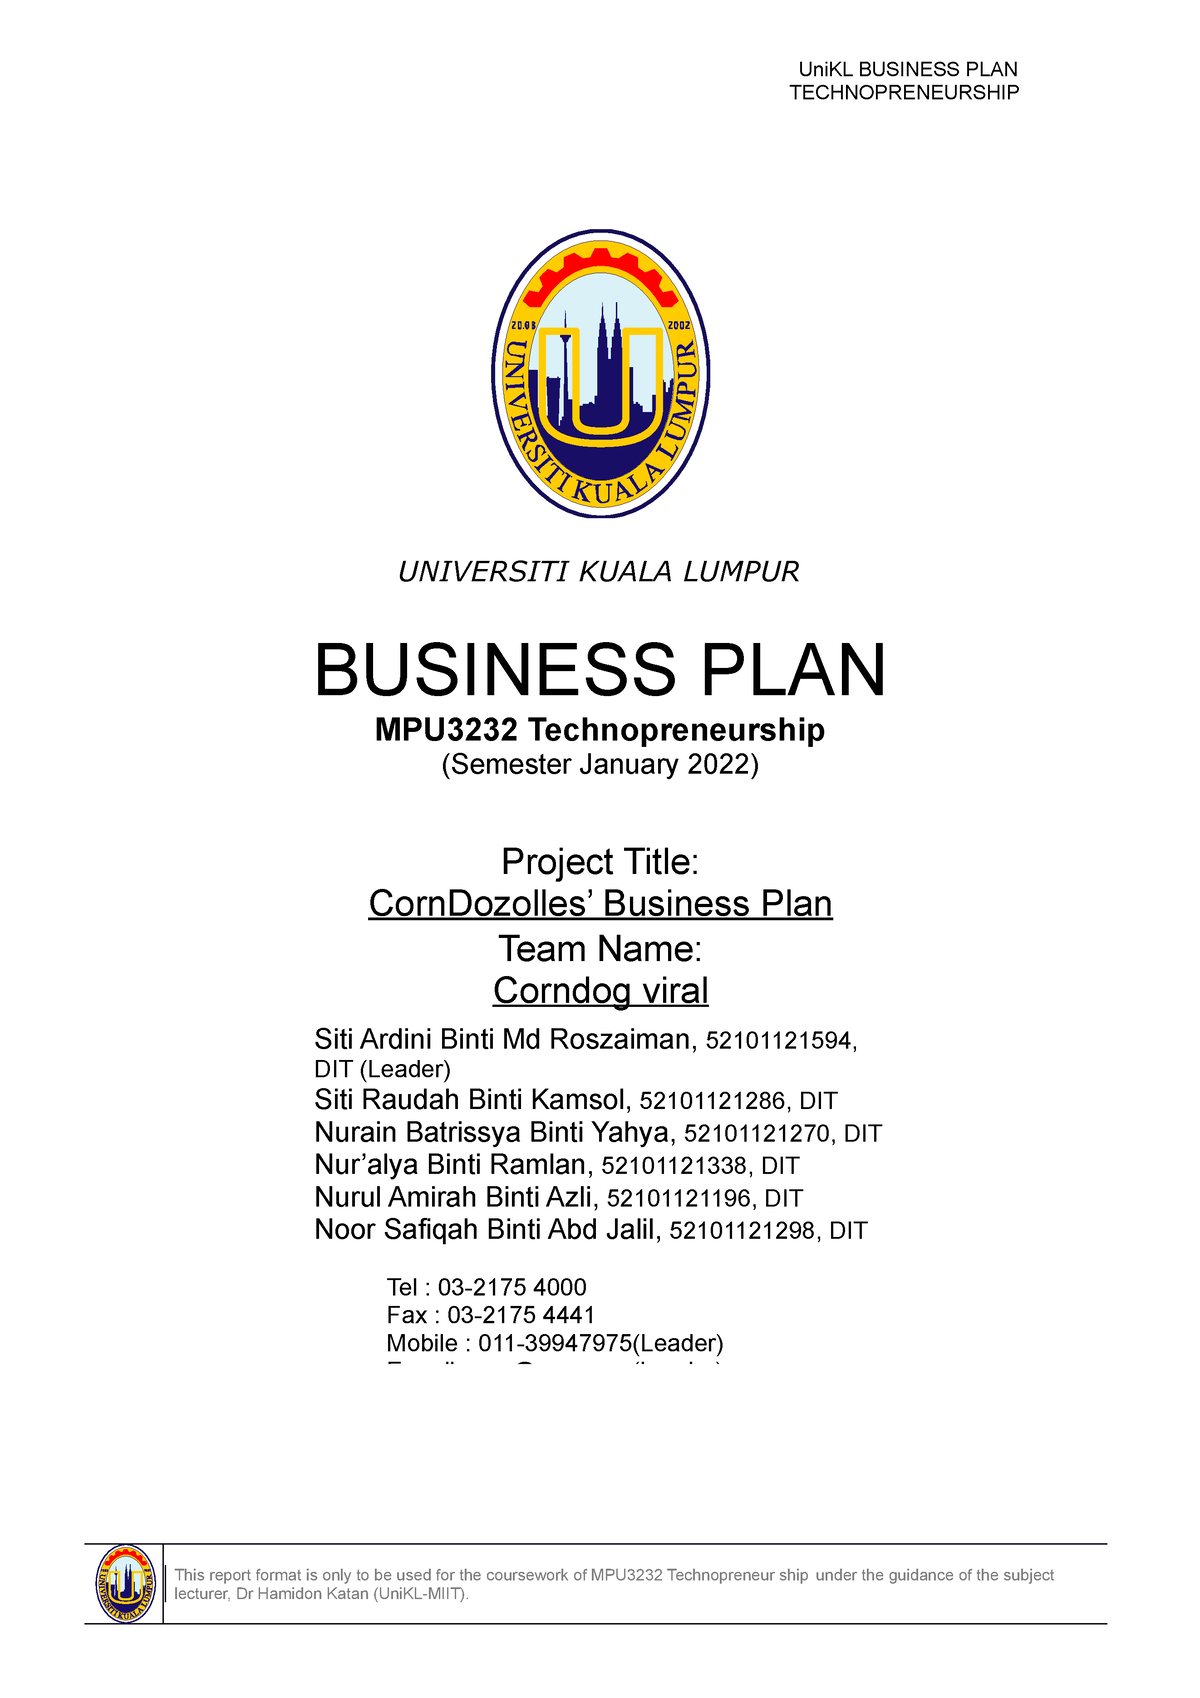 example business plan technopreneurship